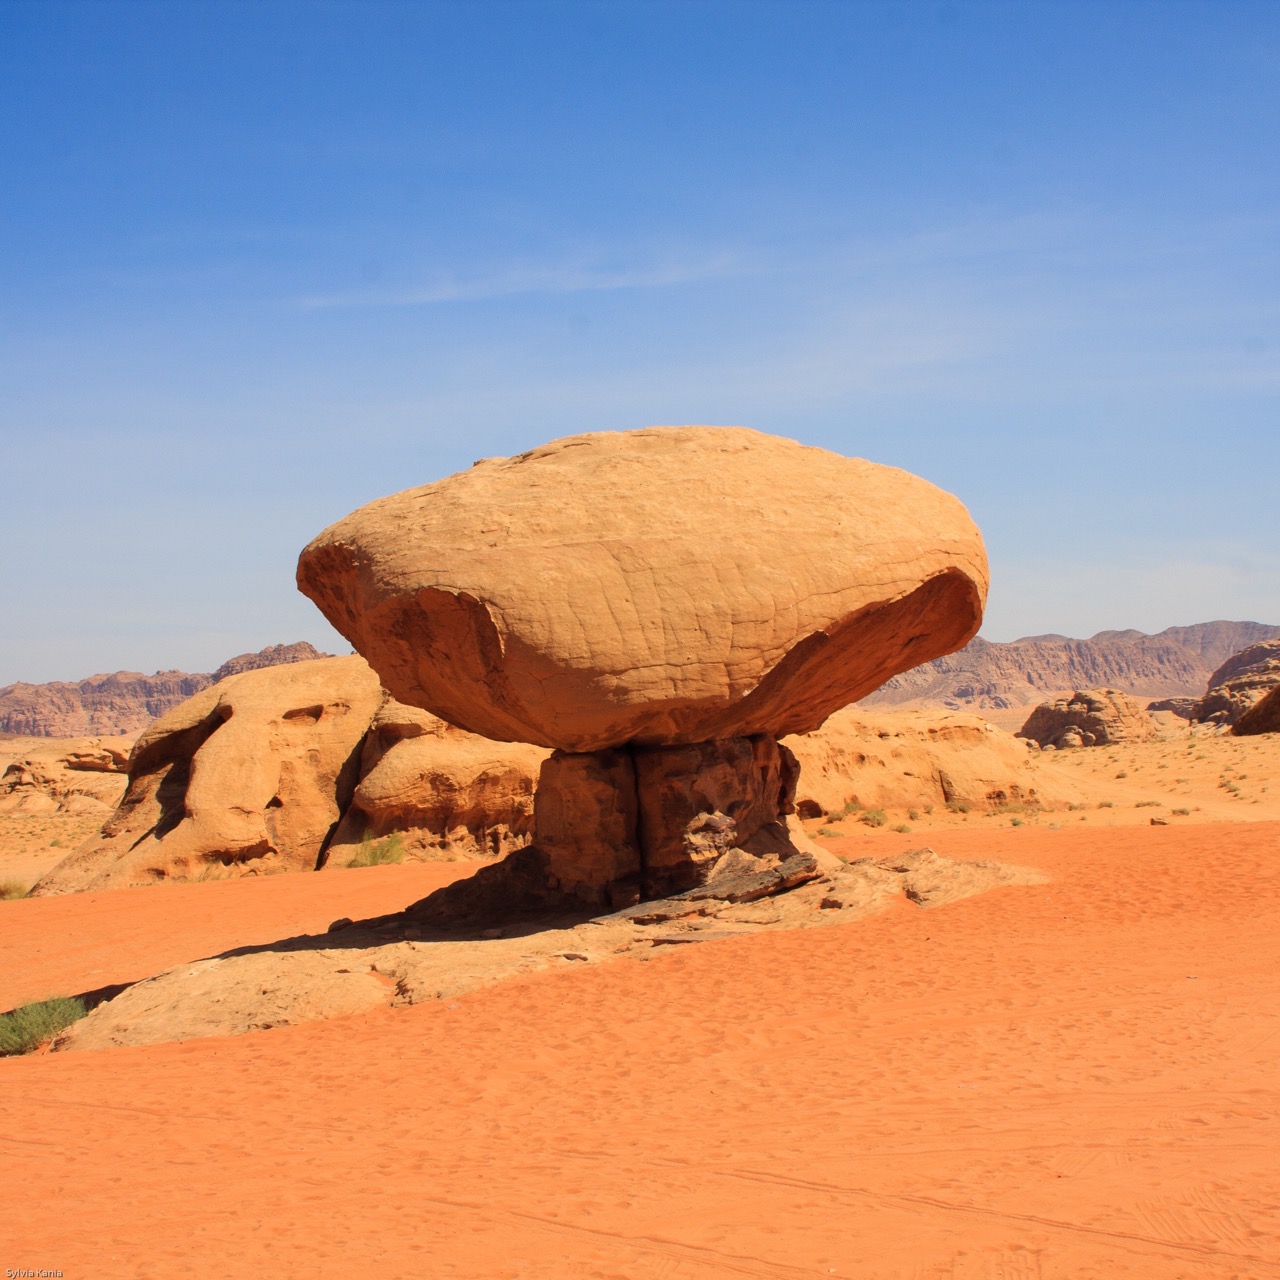 Dla takich widoków jak skała Grzyb warto wybrać się w trasę przez jordańską pustynię.